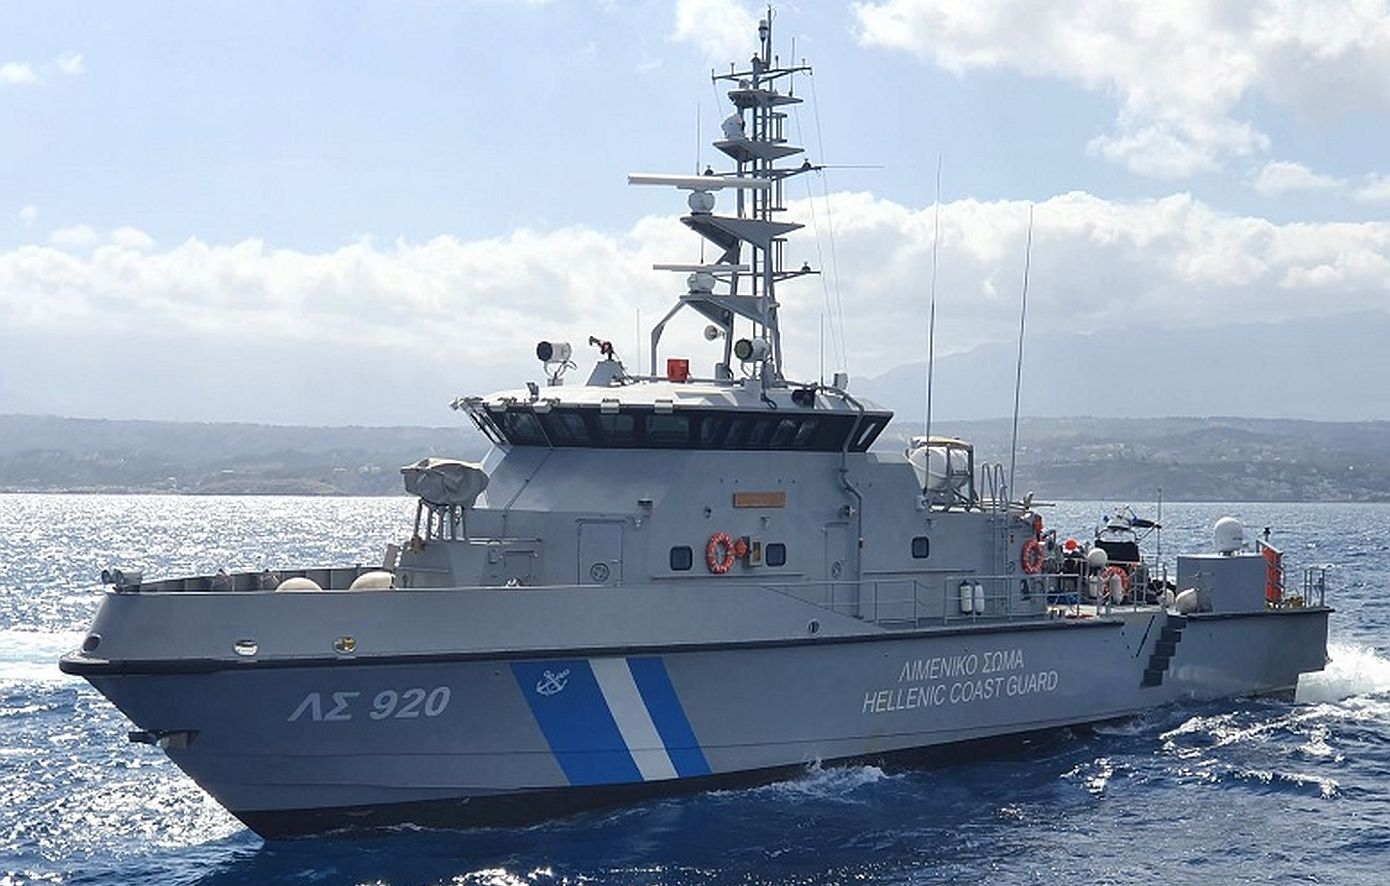 Ρέθυμνο: Πλοίαρχος φορτηγού πλοίου βρέθηκε νεκρός μέσα στην καμπίνα του